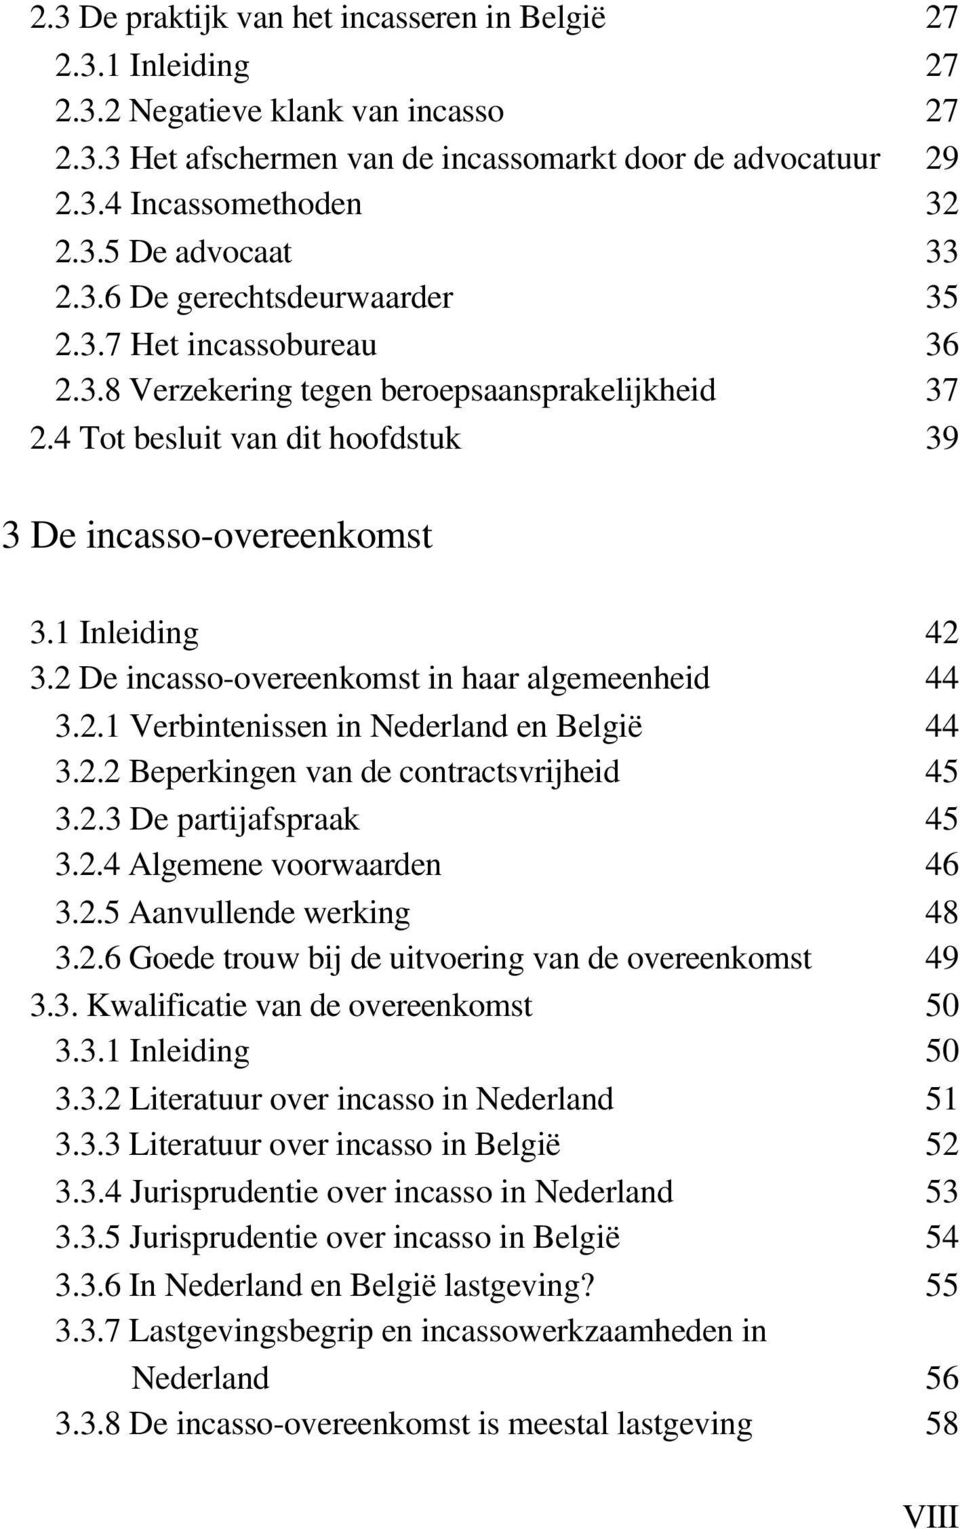 2 De incasso-overeenkomst in haar algemeenheid 44 3.2.1 Verbintenissen in Nederland en België 44 3.2.2 Beperkingen van de contractsvrijheid 45 3.2.3 De partijafspraak 45 3.2.4 Algemene voorwaarden 46 3.